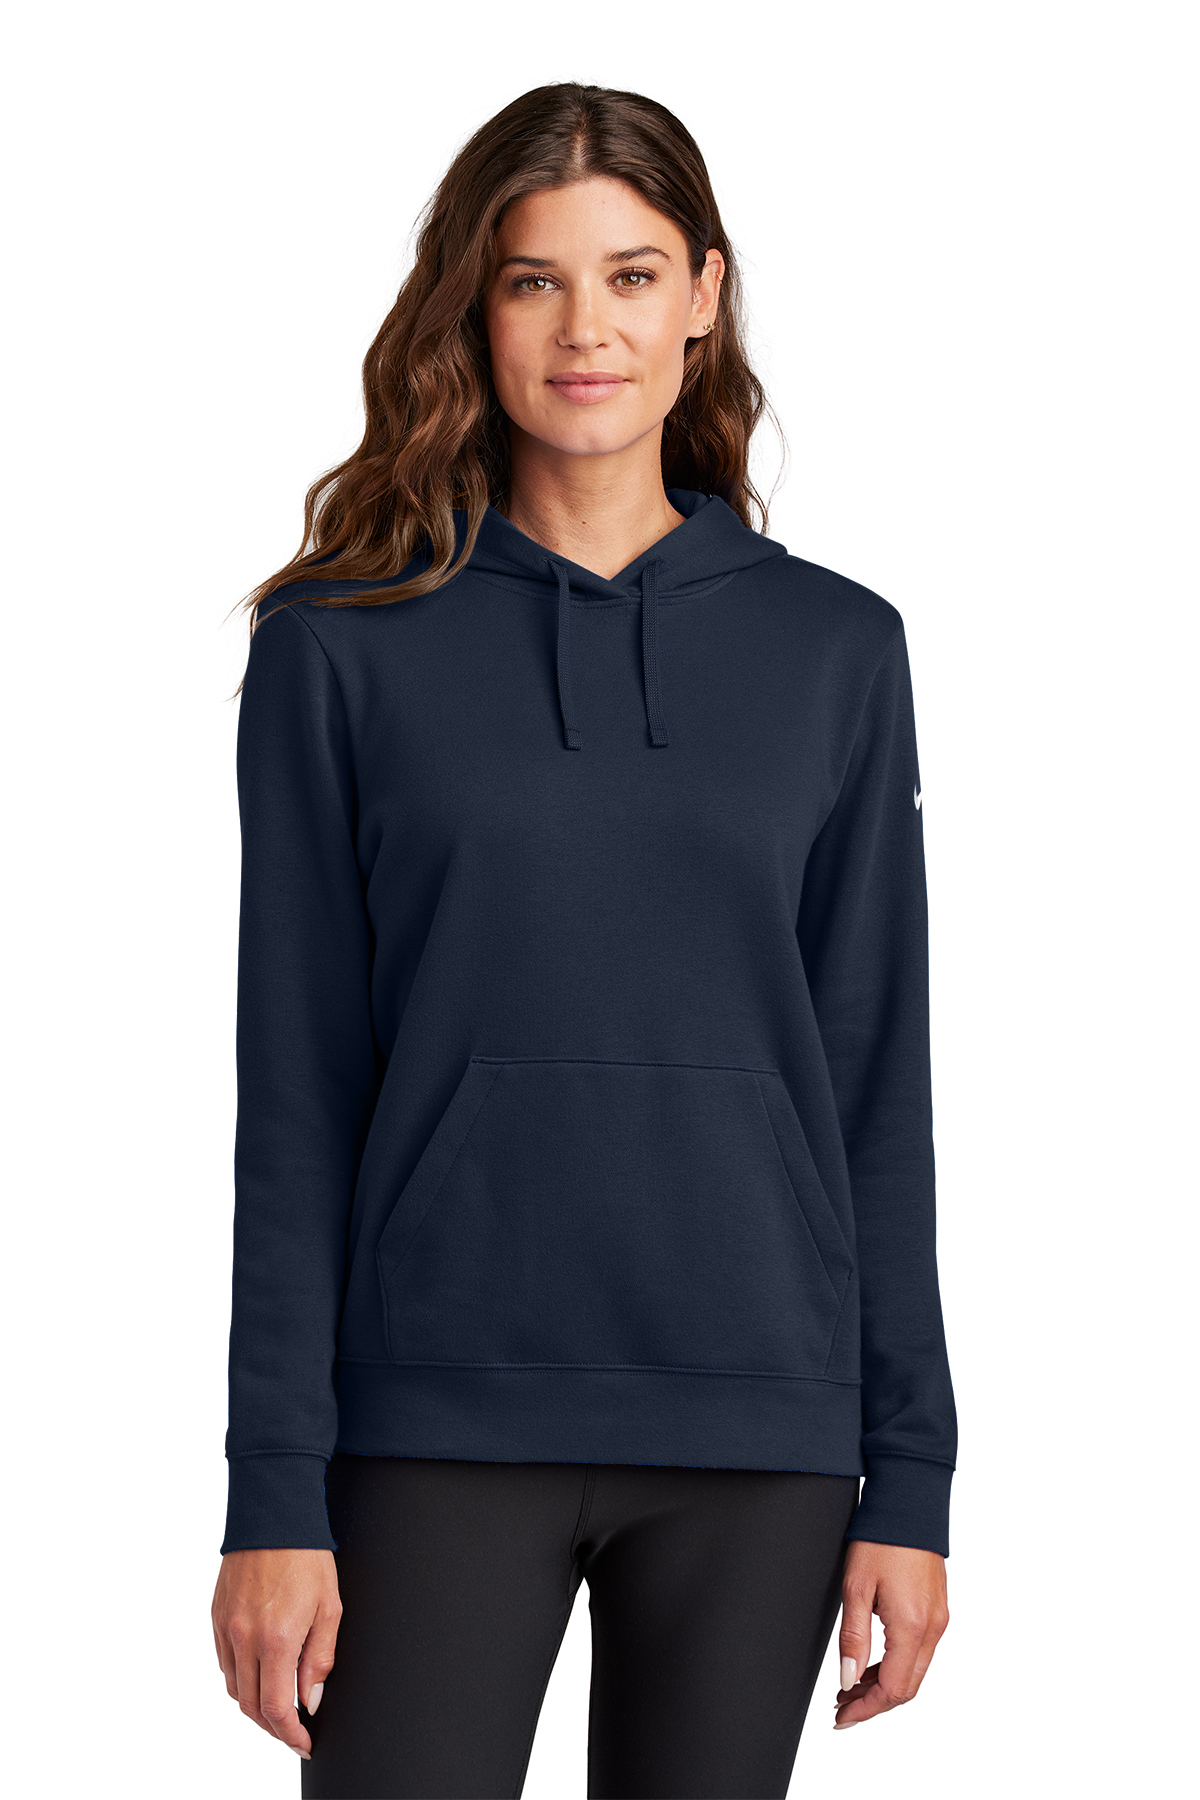 Nike Ladies Club Fleece Sleeve Swoosh Pullover Hoodie | Product | SanMar